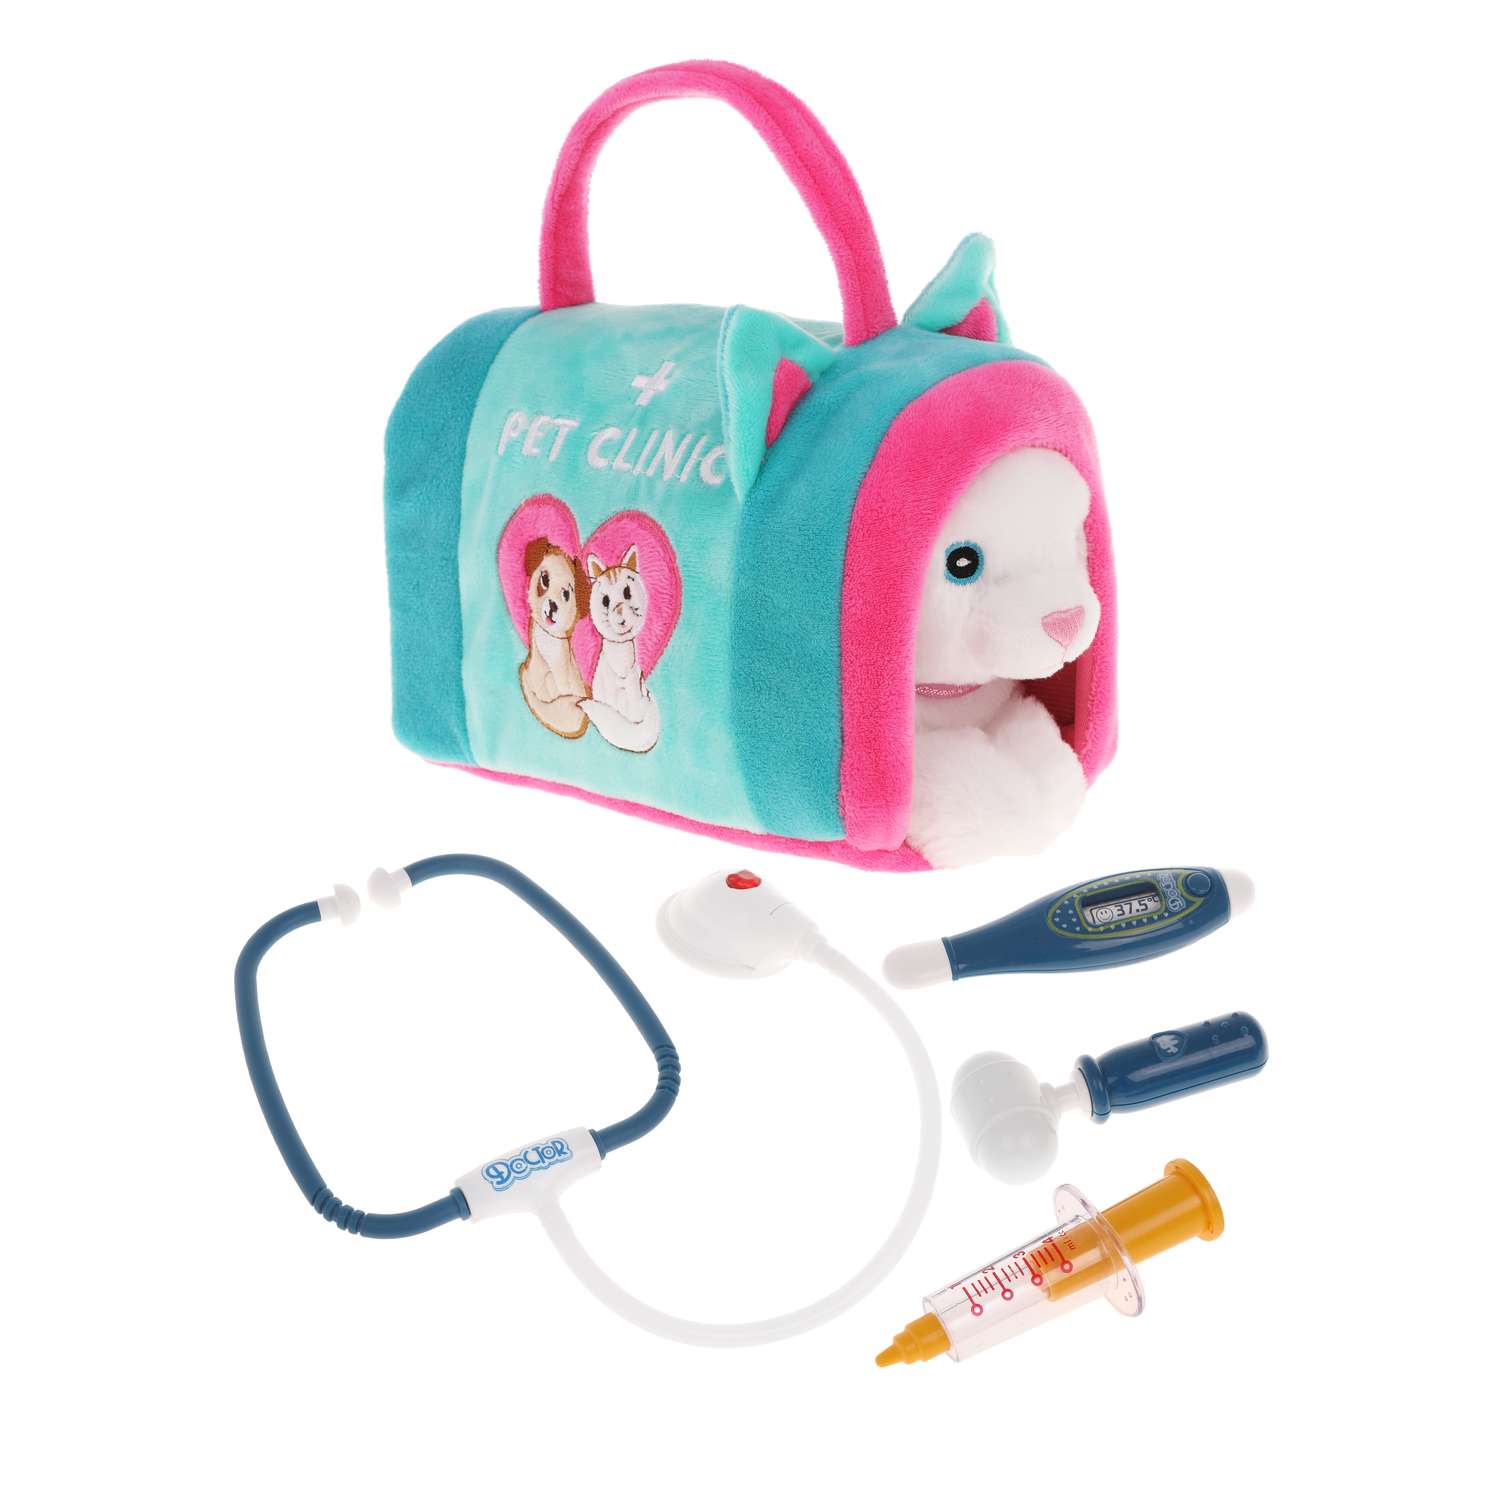 Мягкая игрушка детская Fluffy Family котенок с сумкой-переноской Pet clinic - фото 1